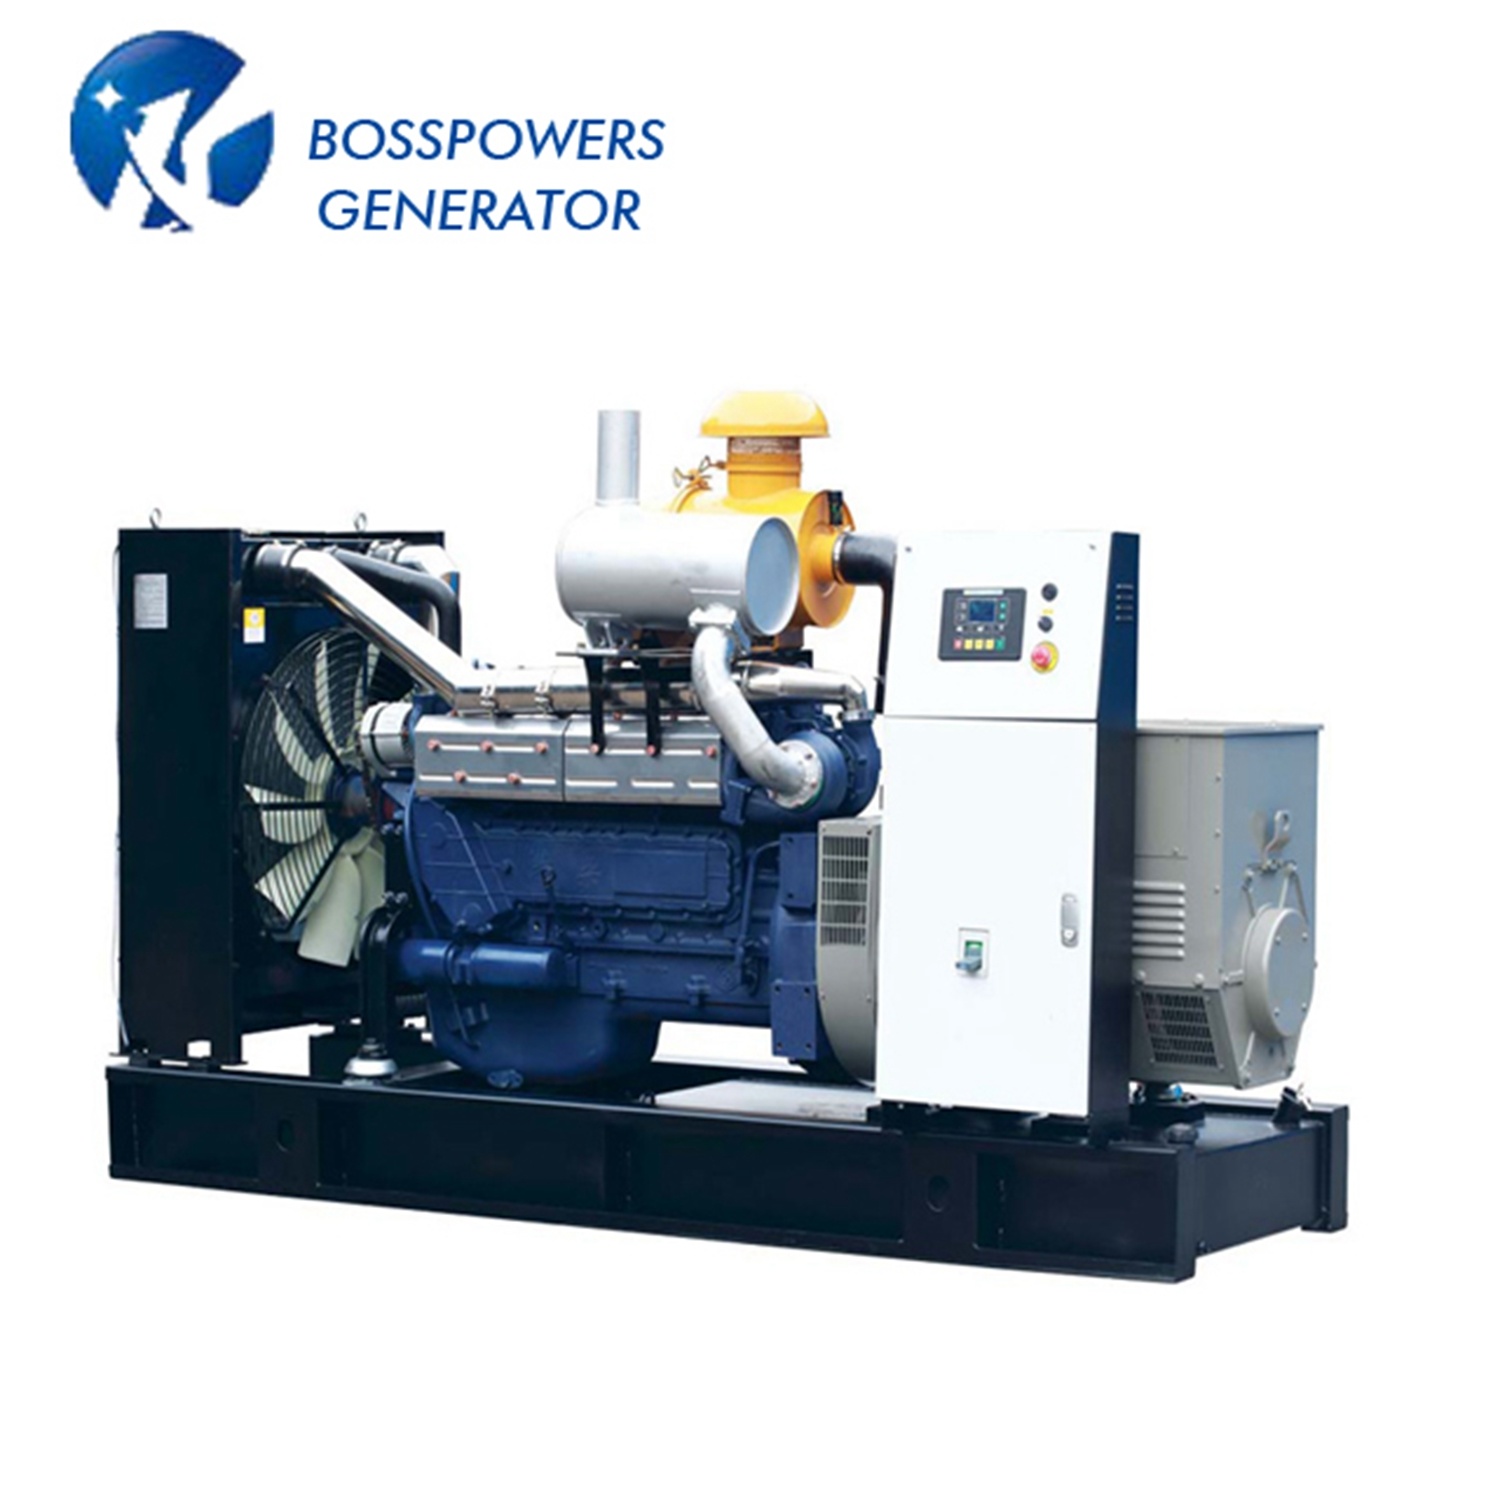 200kw 250kVA Prime Power Weichai Silent Diesel Generator